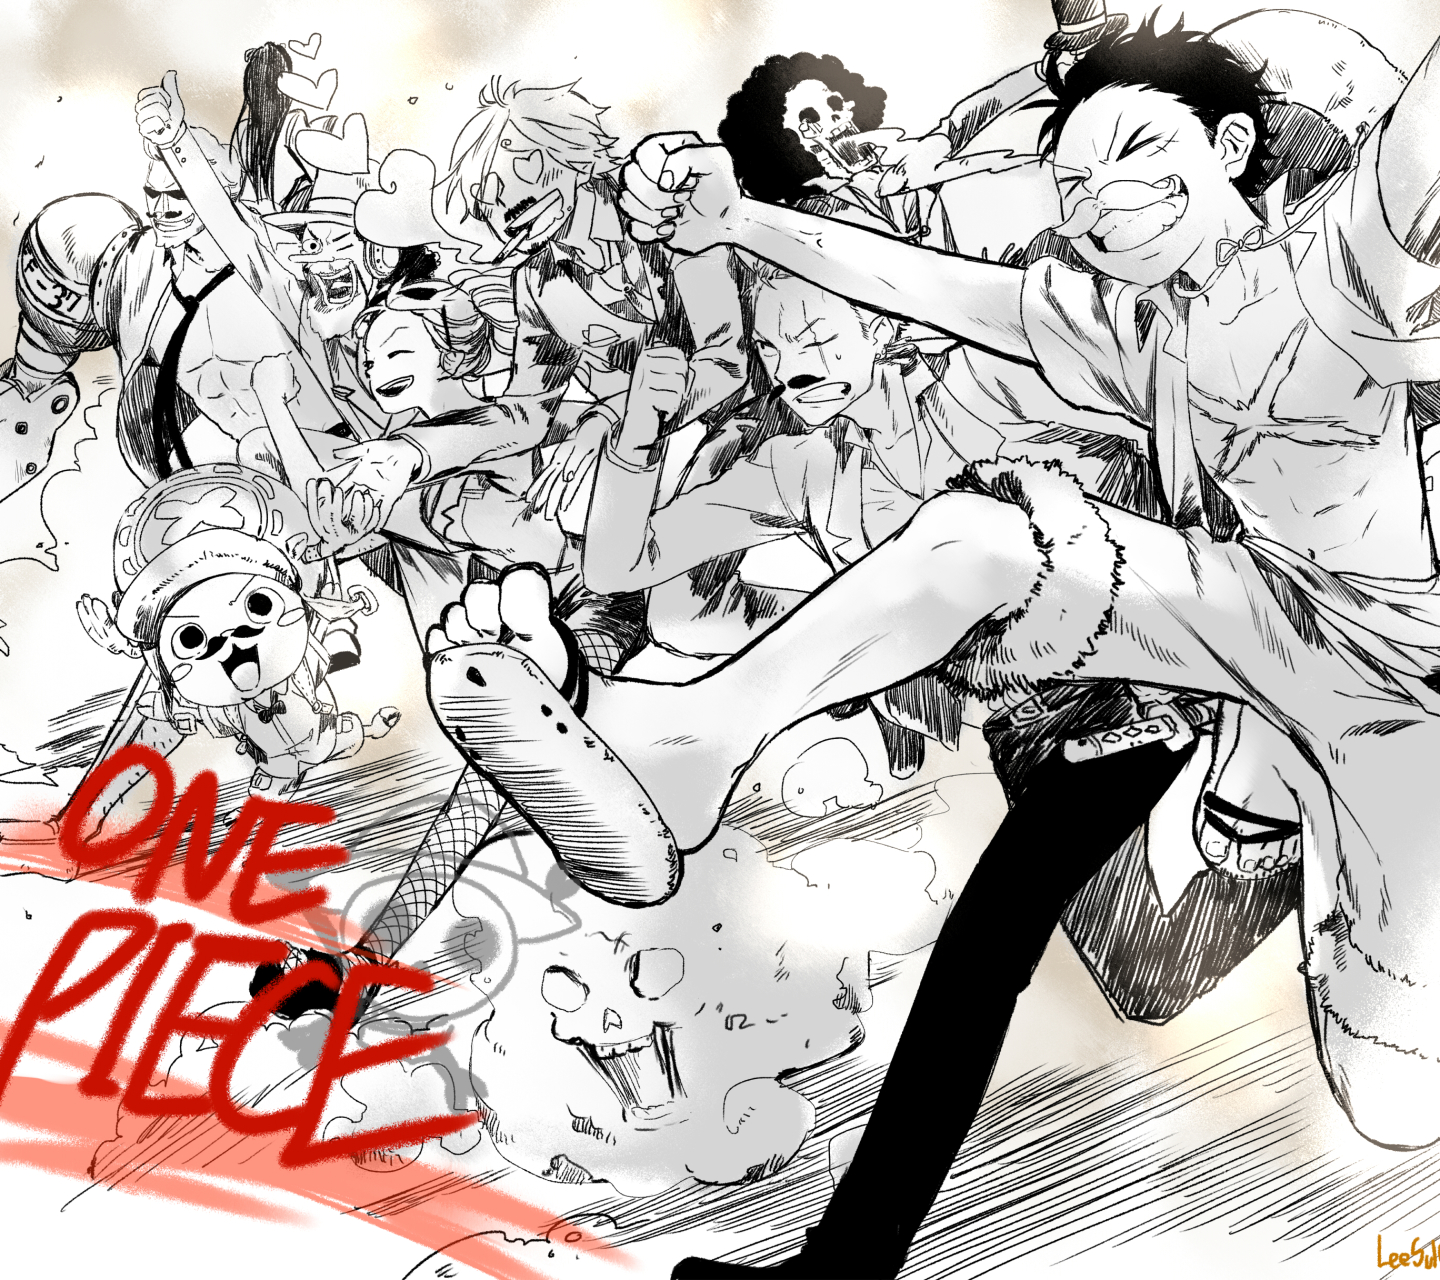 Download mobile wallpaper Anime, Pirate, One Piece, Tony Tony Chopper, Usopp (One Piece), Roronoa Zoro, Monkey D Luffy, Nami (One Piece), Sanji (One Piece), Brook (One Piece), Nico Robin, Franky (One Piece) for free.